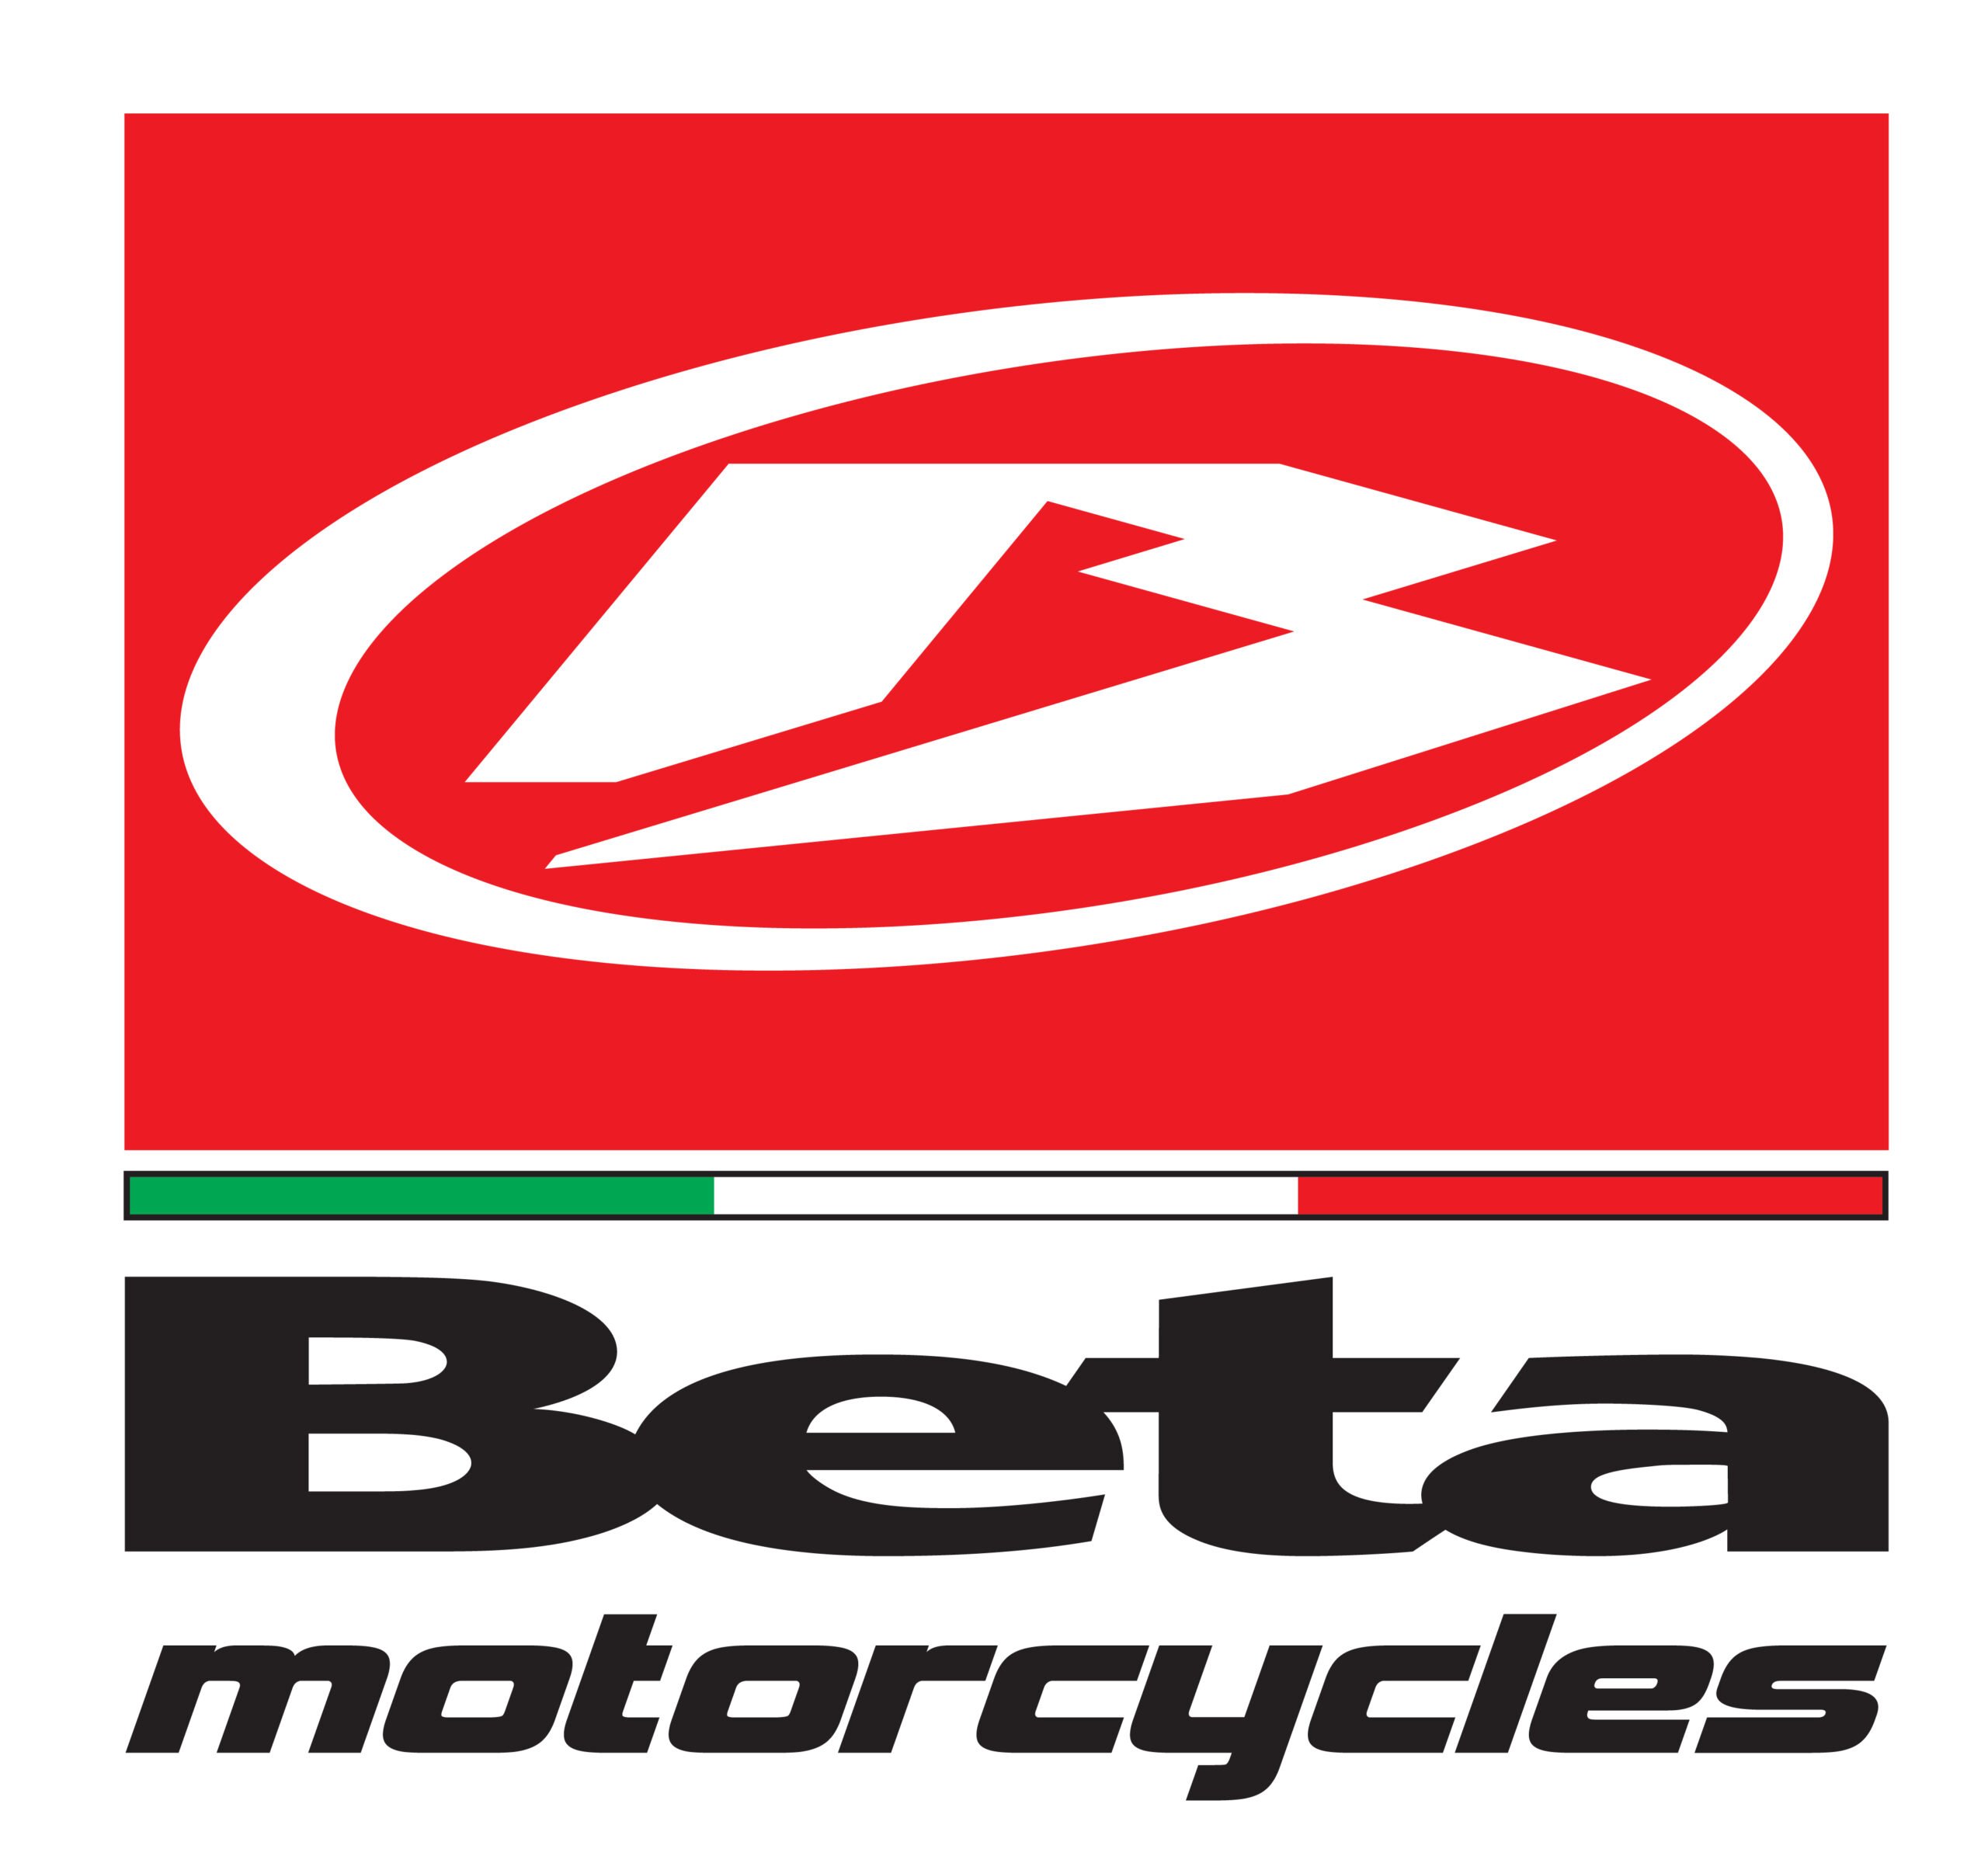 Beta Motorcycles logo